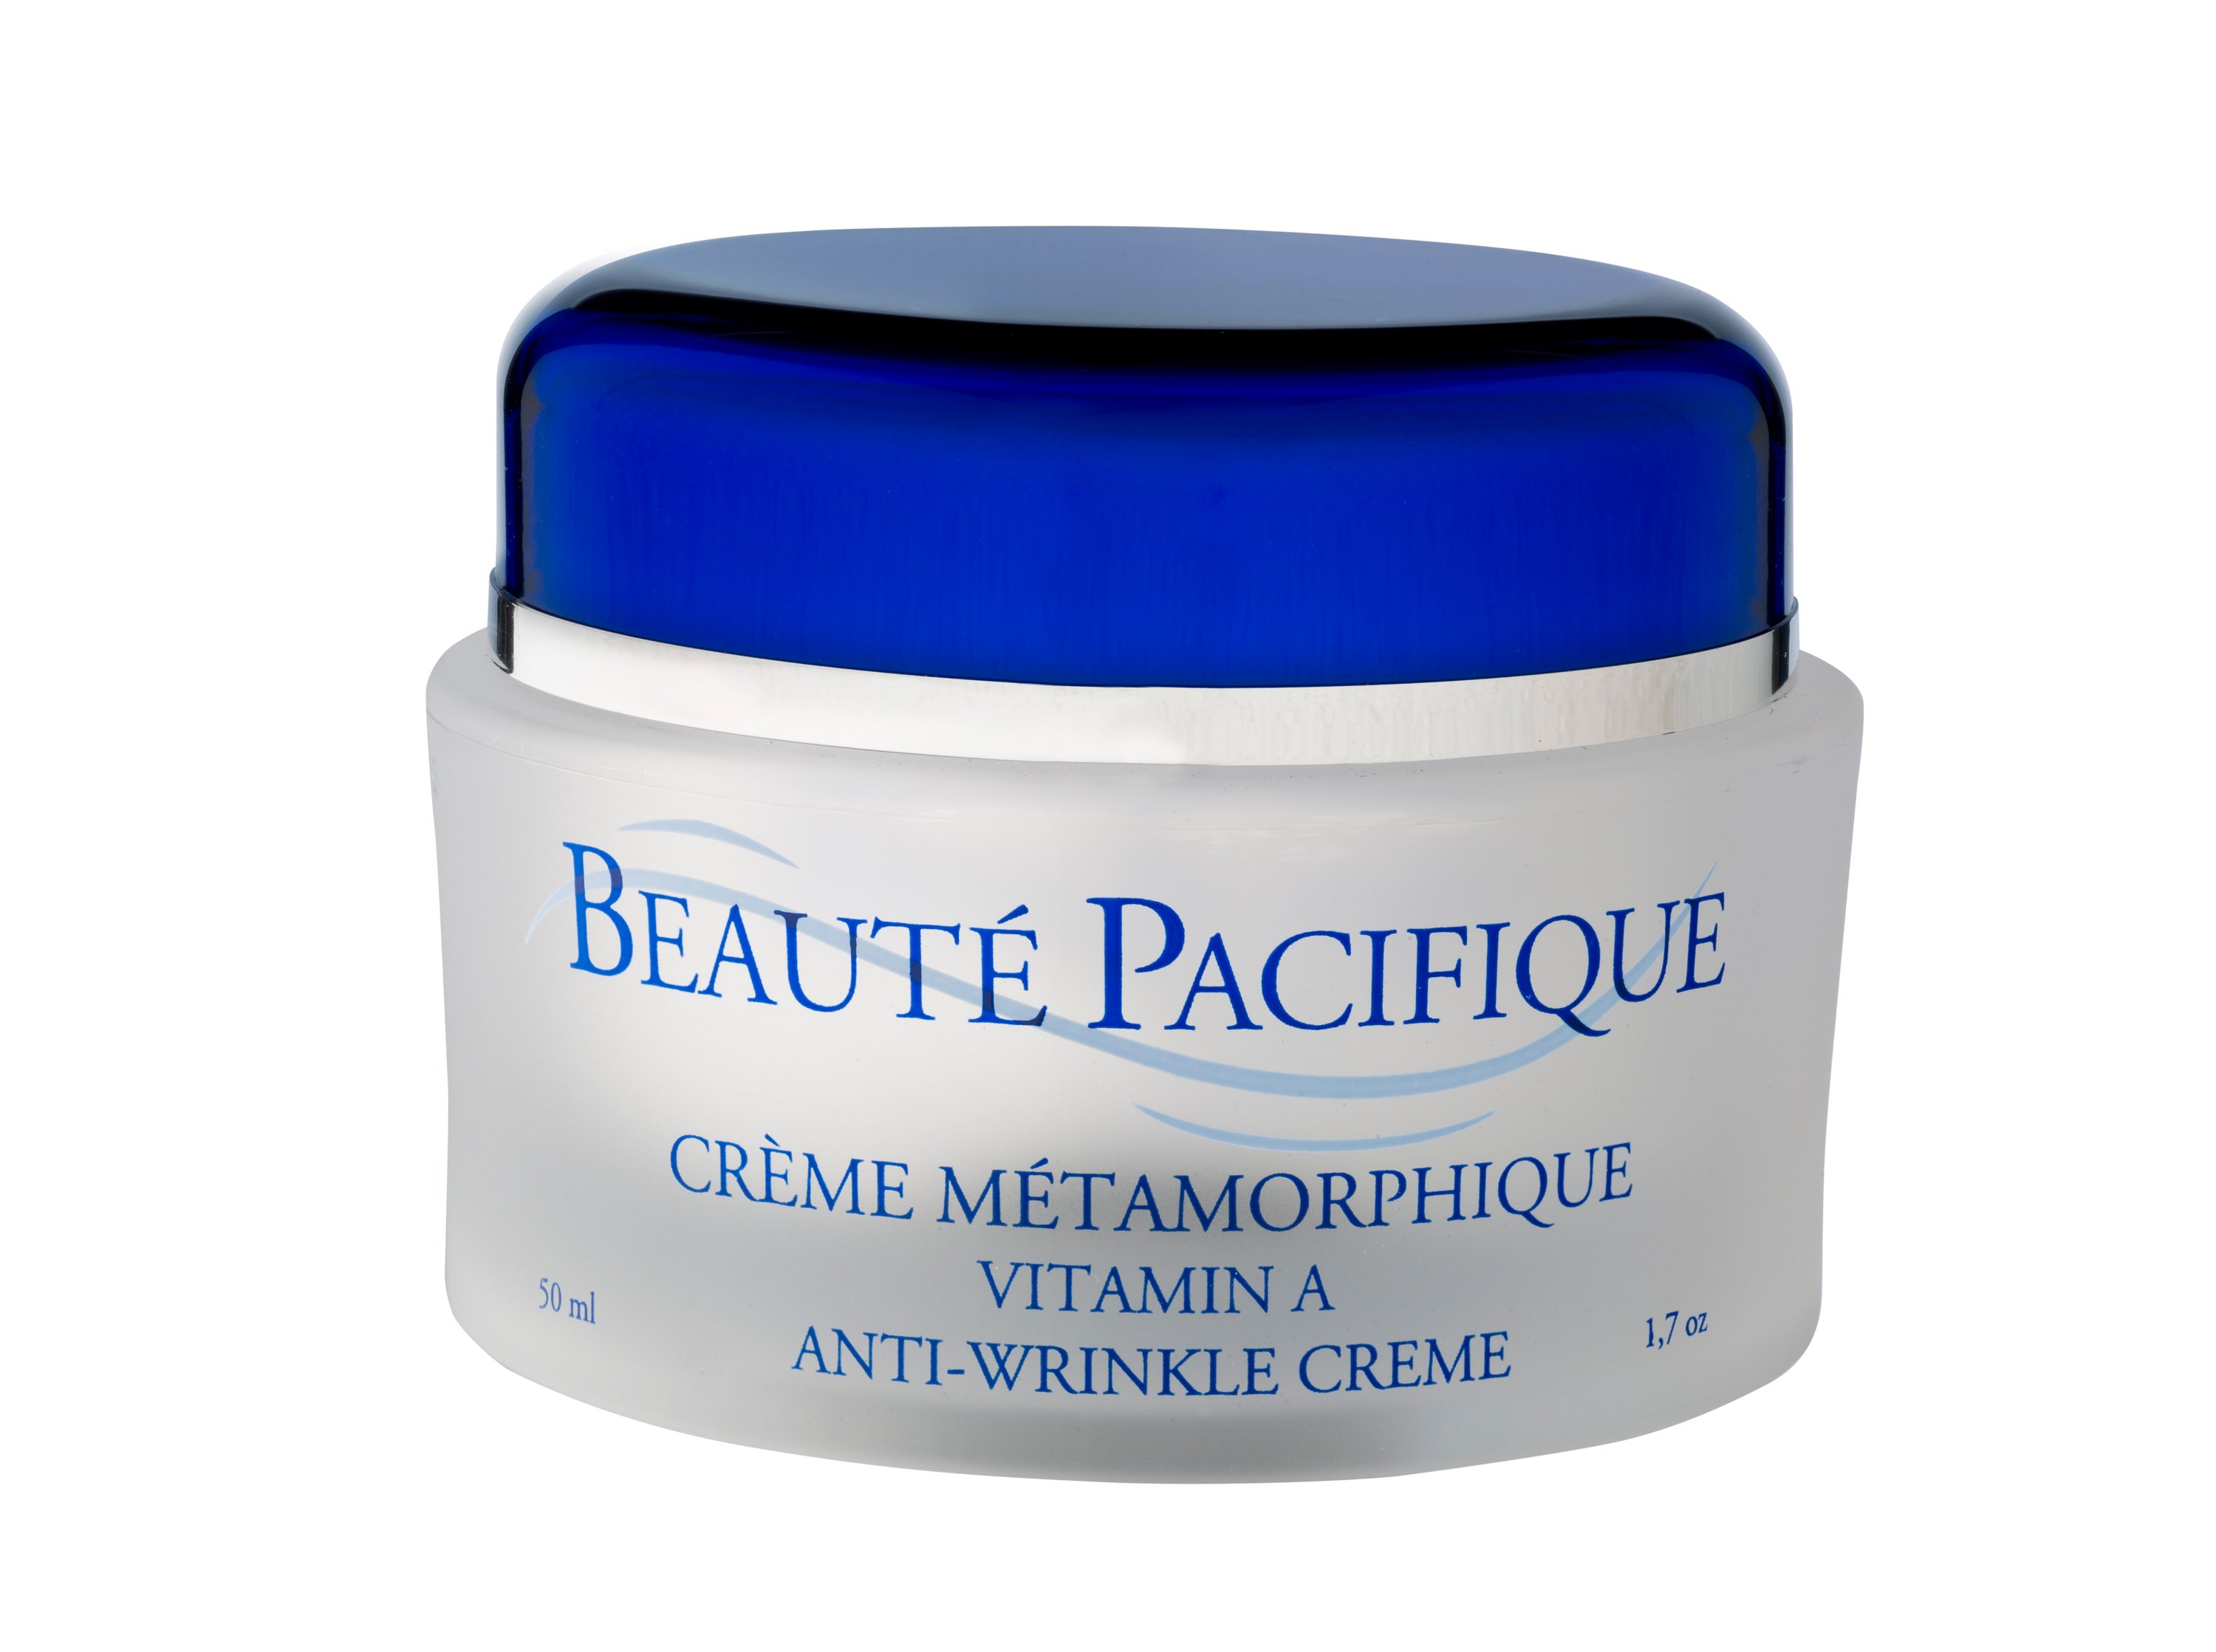 Beauté Pacifique - Créme Métamorphique A-vitamin creme til anti-age behandling 50 ml.